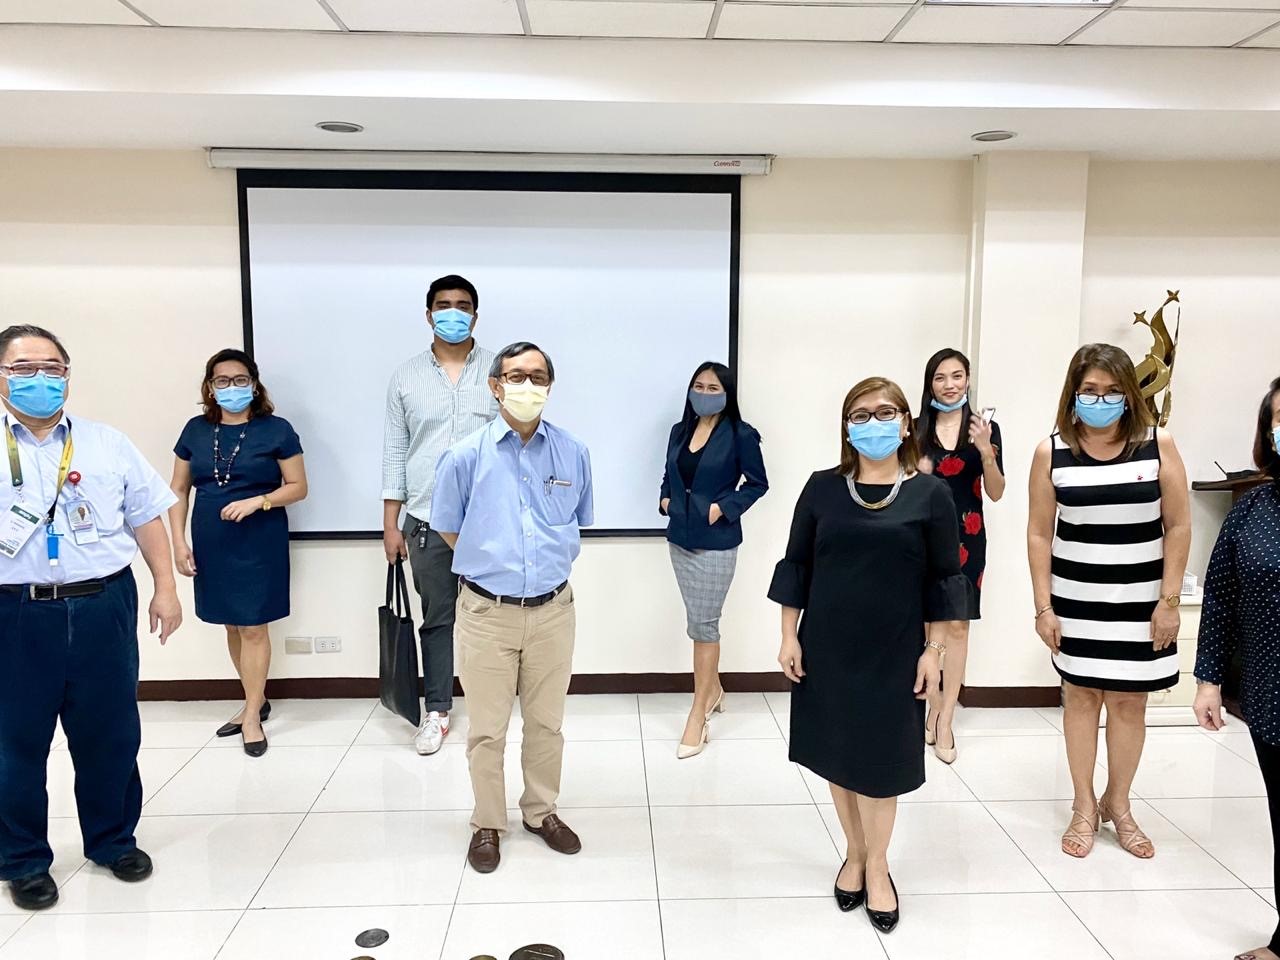 Docquity จัดประชุมออนไลน์ด้านสาธารณสุขครั้งแรกที่ใหญ่ที่สุดในเอเชียตะวันออกเฉียงใต้ ดึงแพทย์กว่า 4,900 คนเข้าร่วมงาน